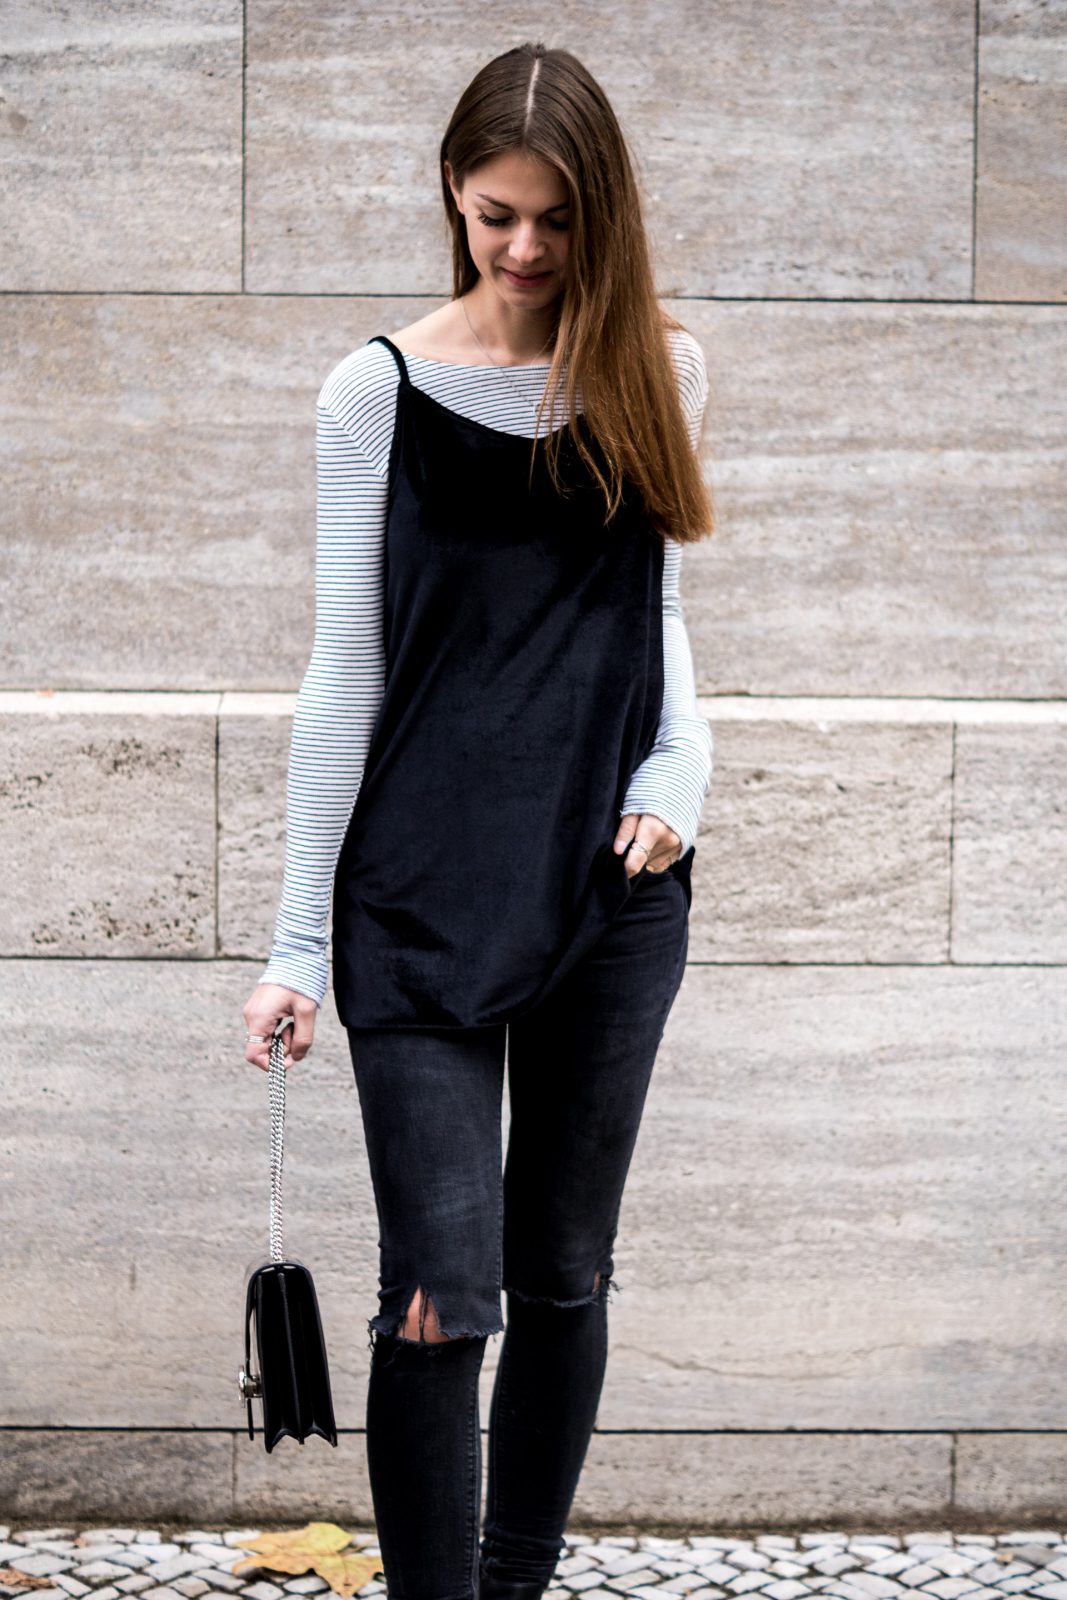 Velvet Dress over Jeans || How to wear summer dresses in winter